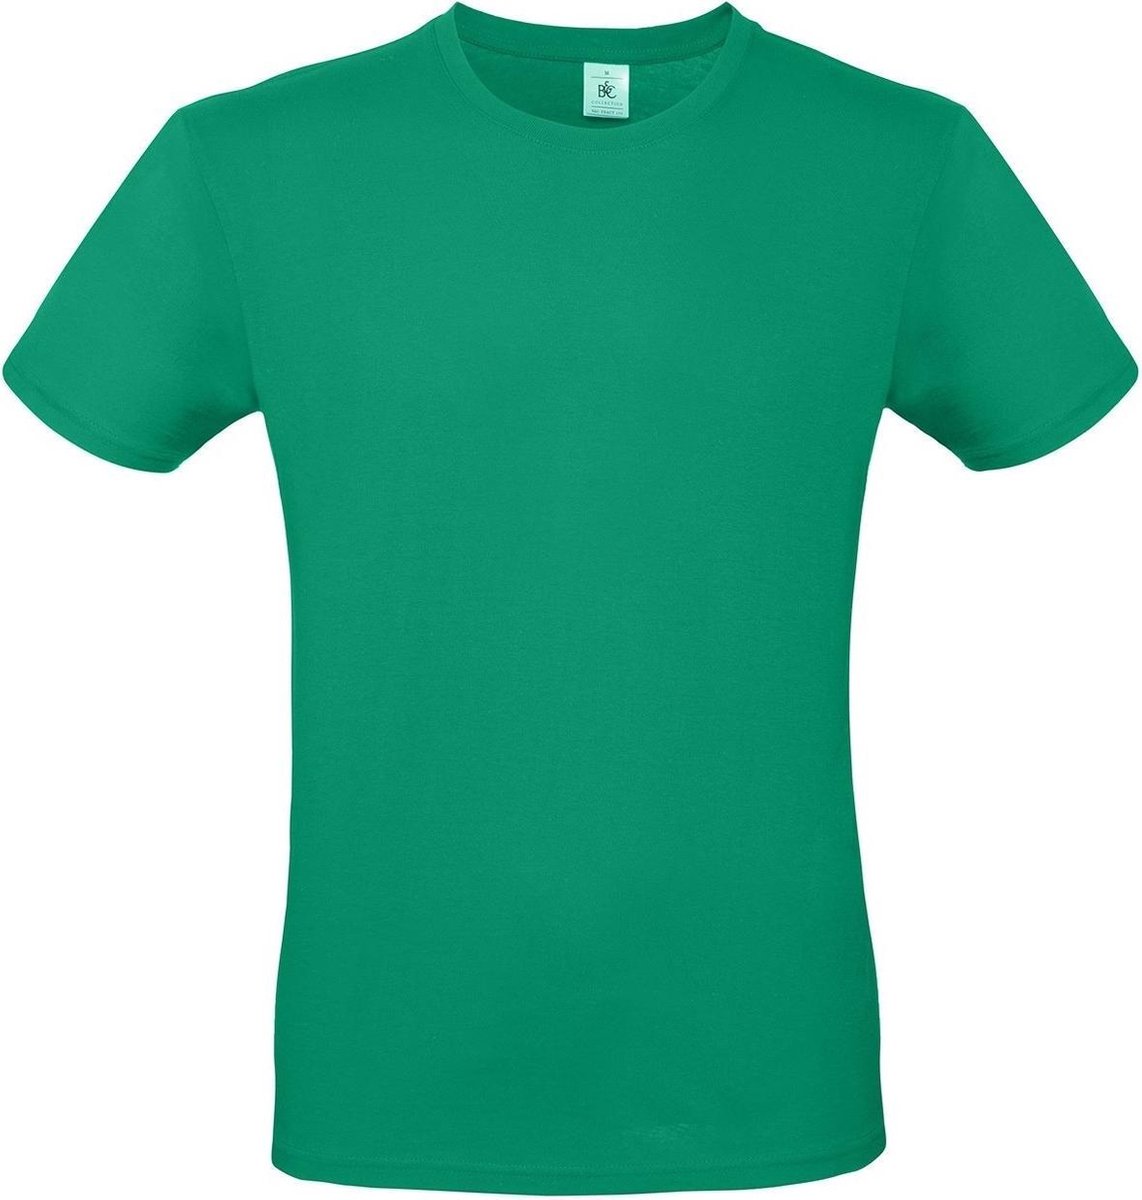 Set van 2x stuks groen basic t-shirt met ronde hals voor heren - katoen - 145 grams - groene shirts / kleding, maat: S (48)